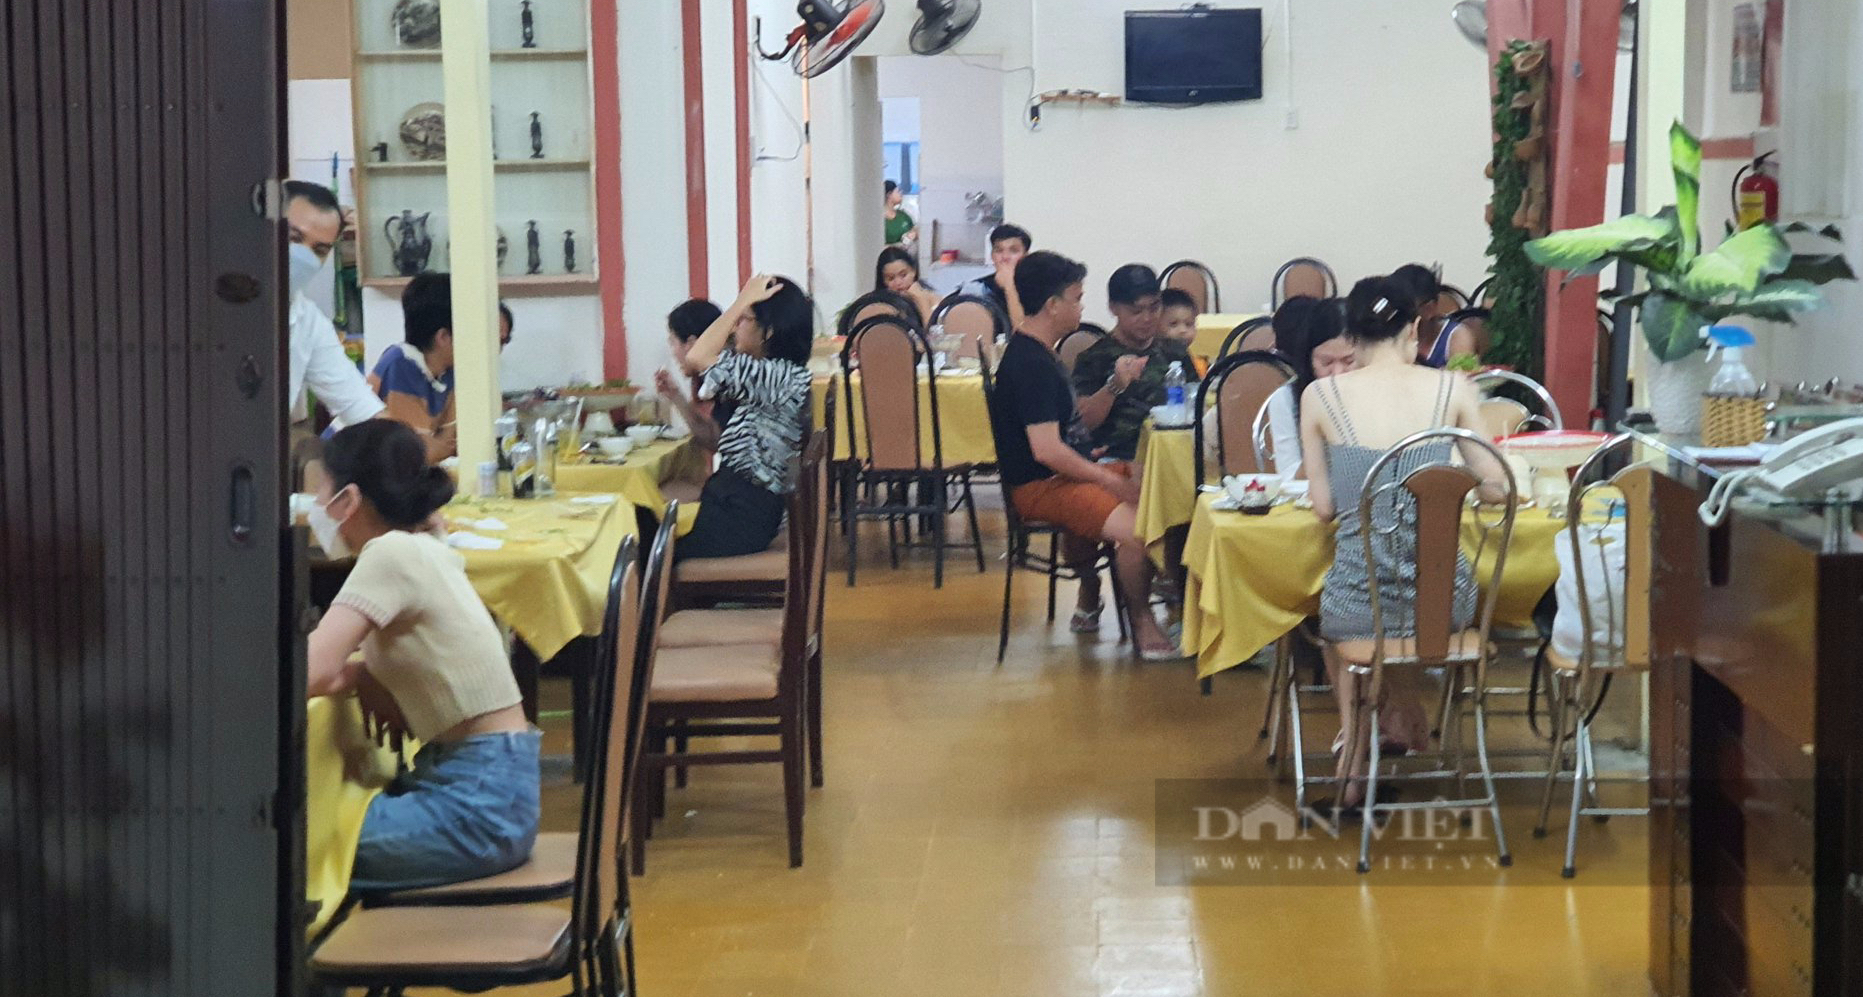 Sài Gòn quán: Lẩu mắm nhúng rau ăn đã thèm, gọi thêm cá lóc nướng, lươn bằm, ếch xào lăn là mở tiệc luôn - Ảnh 1.